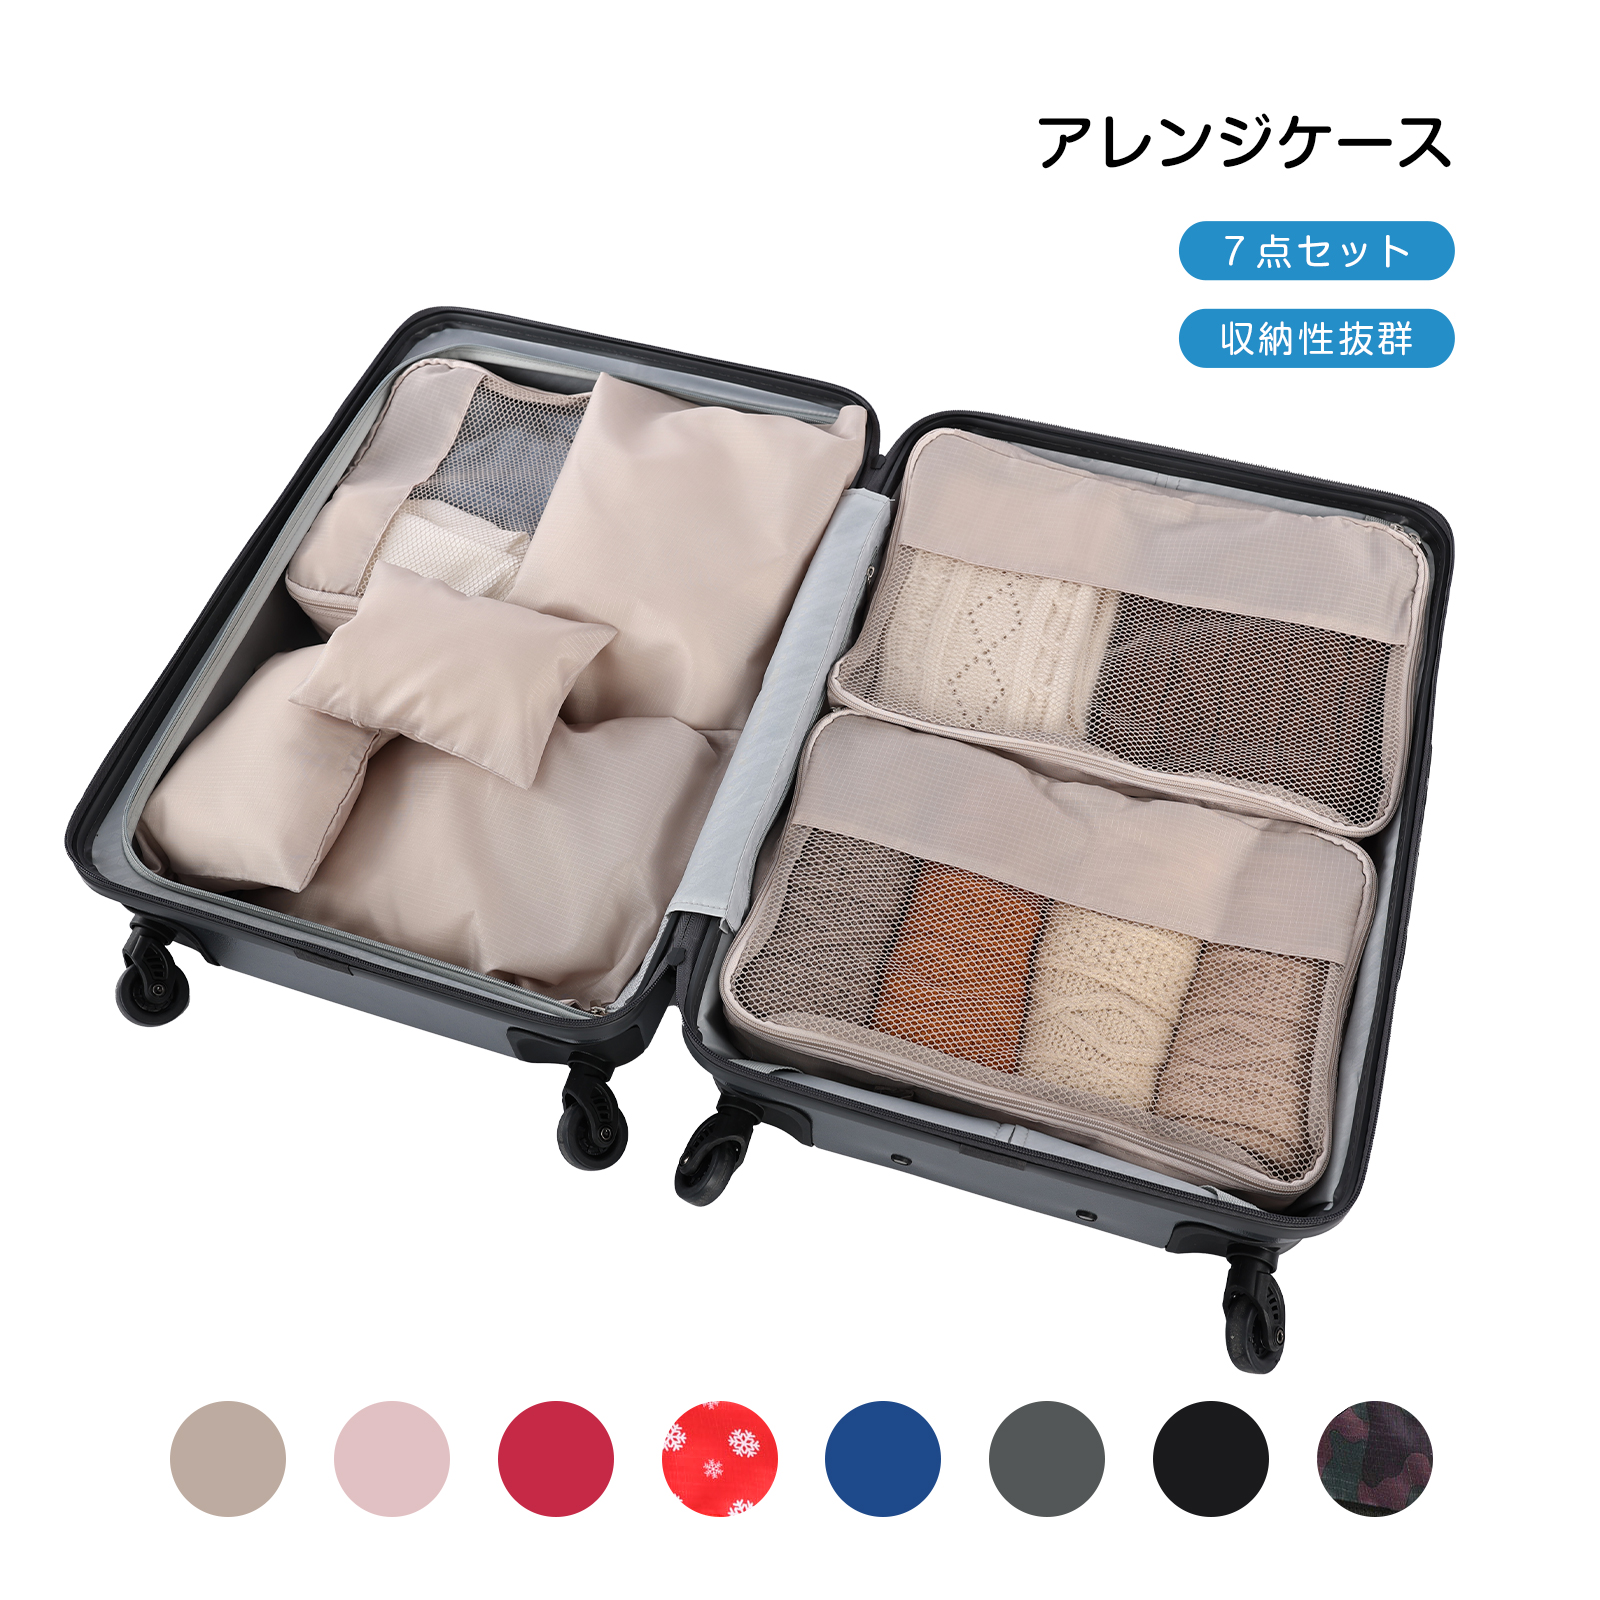 【楽天市場】TABITORA(タビトラ) 収納バッグ スーツケース整理用